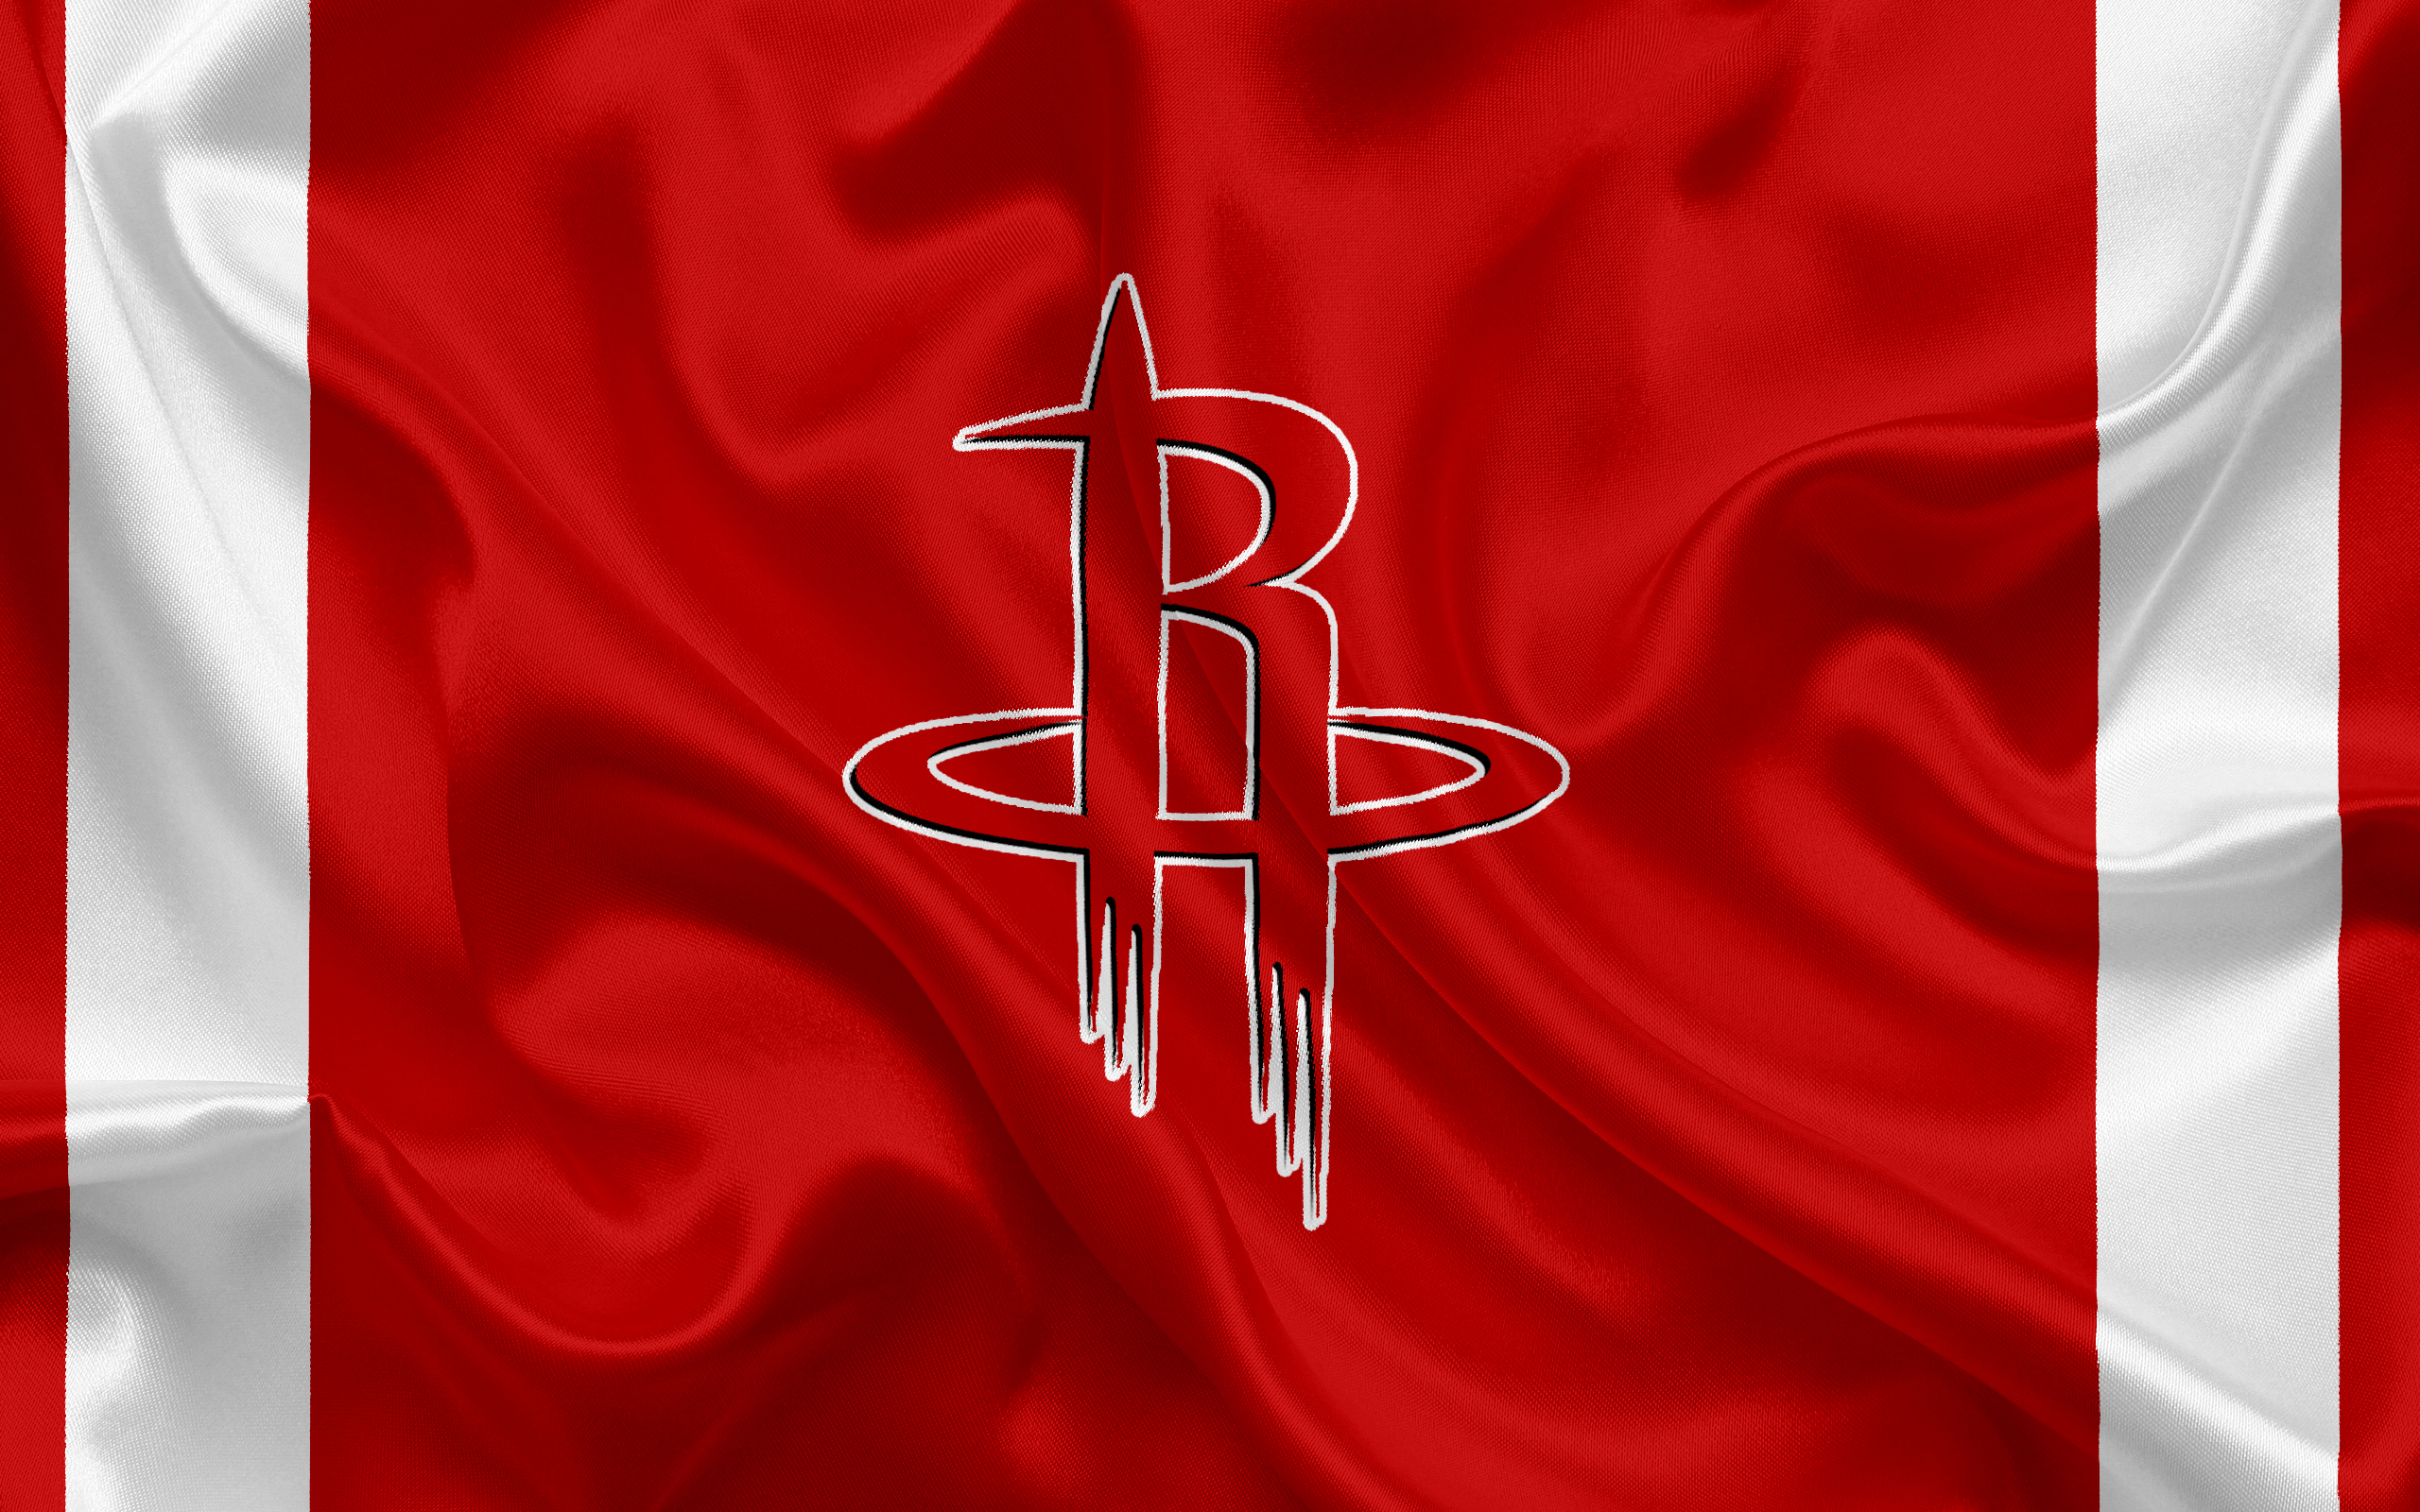 Sports Houston Rockets 4k Ultra HD Wallpaper